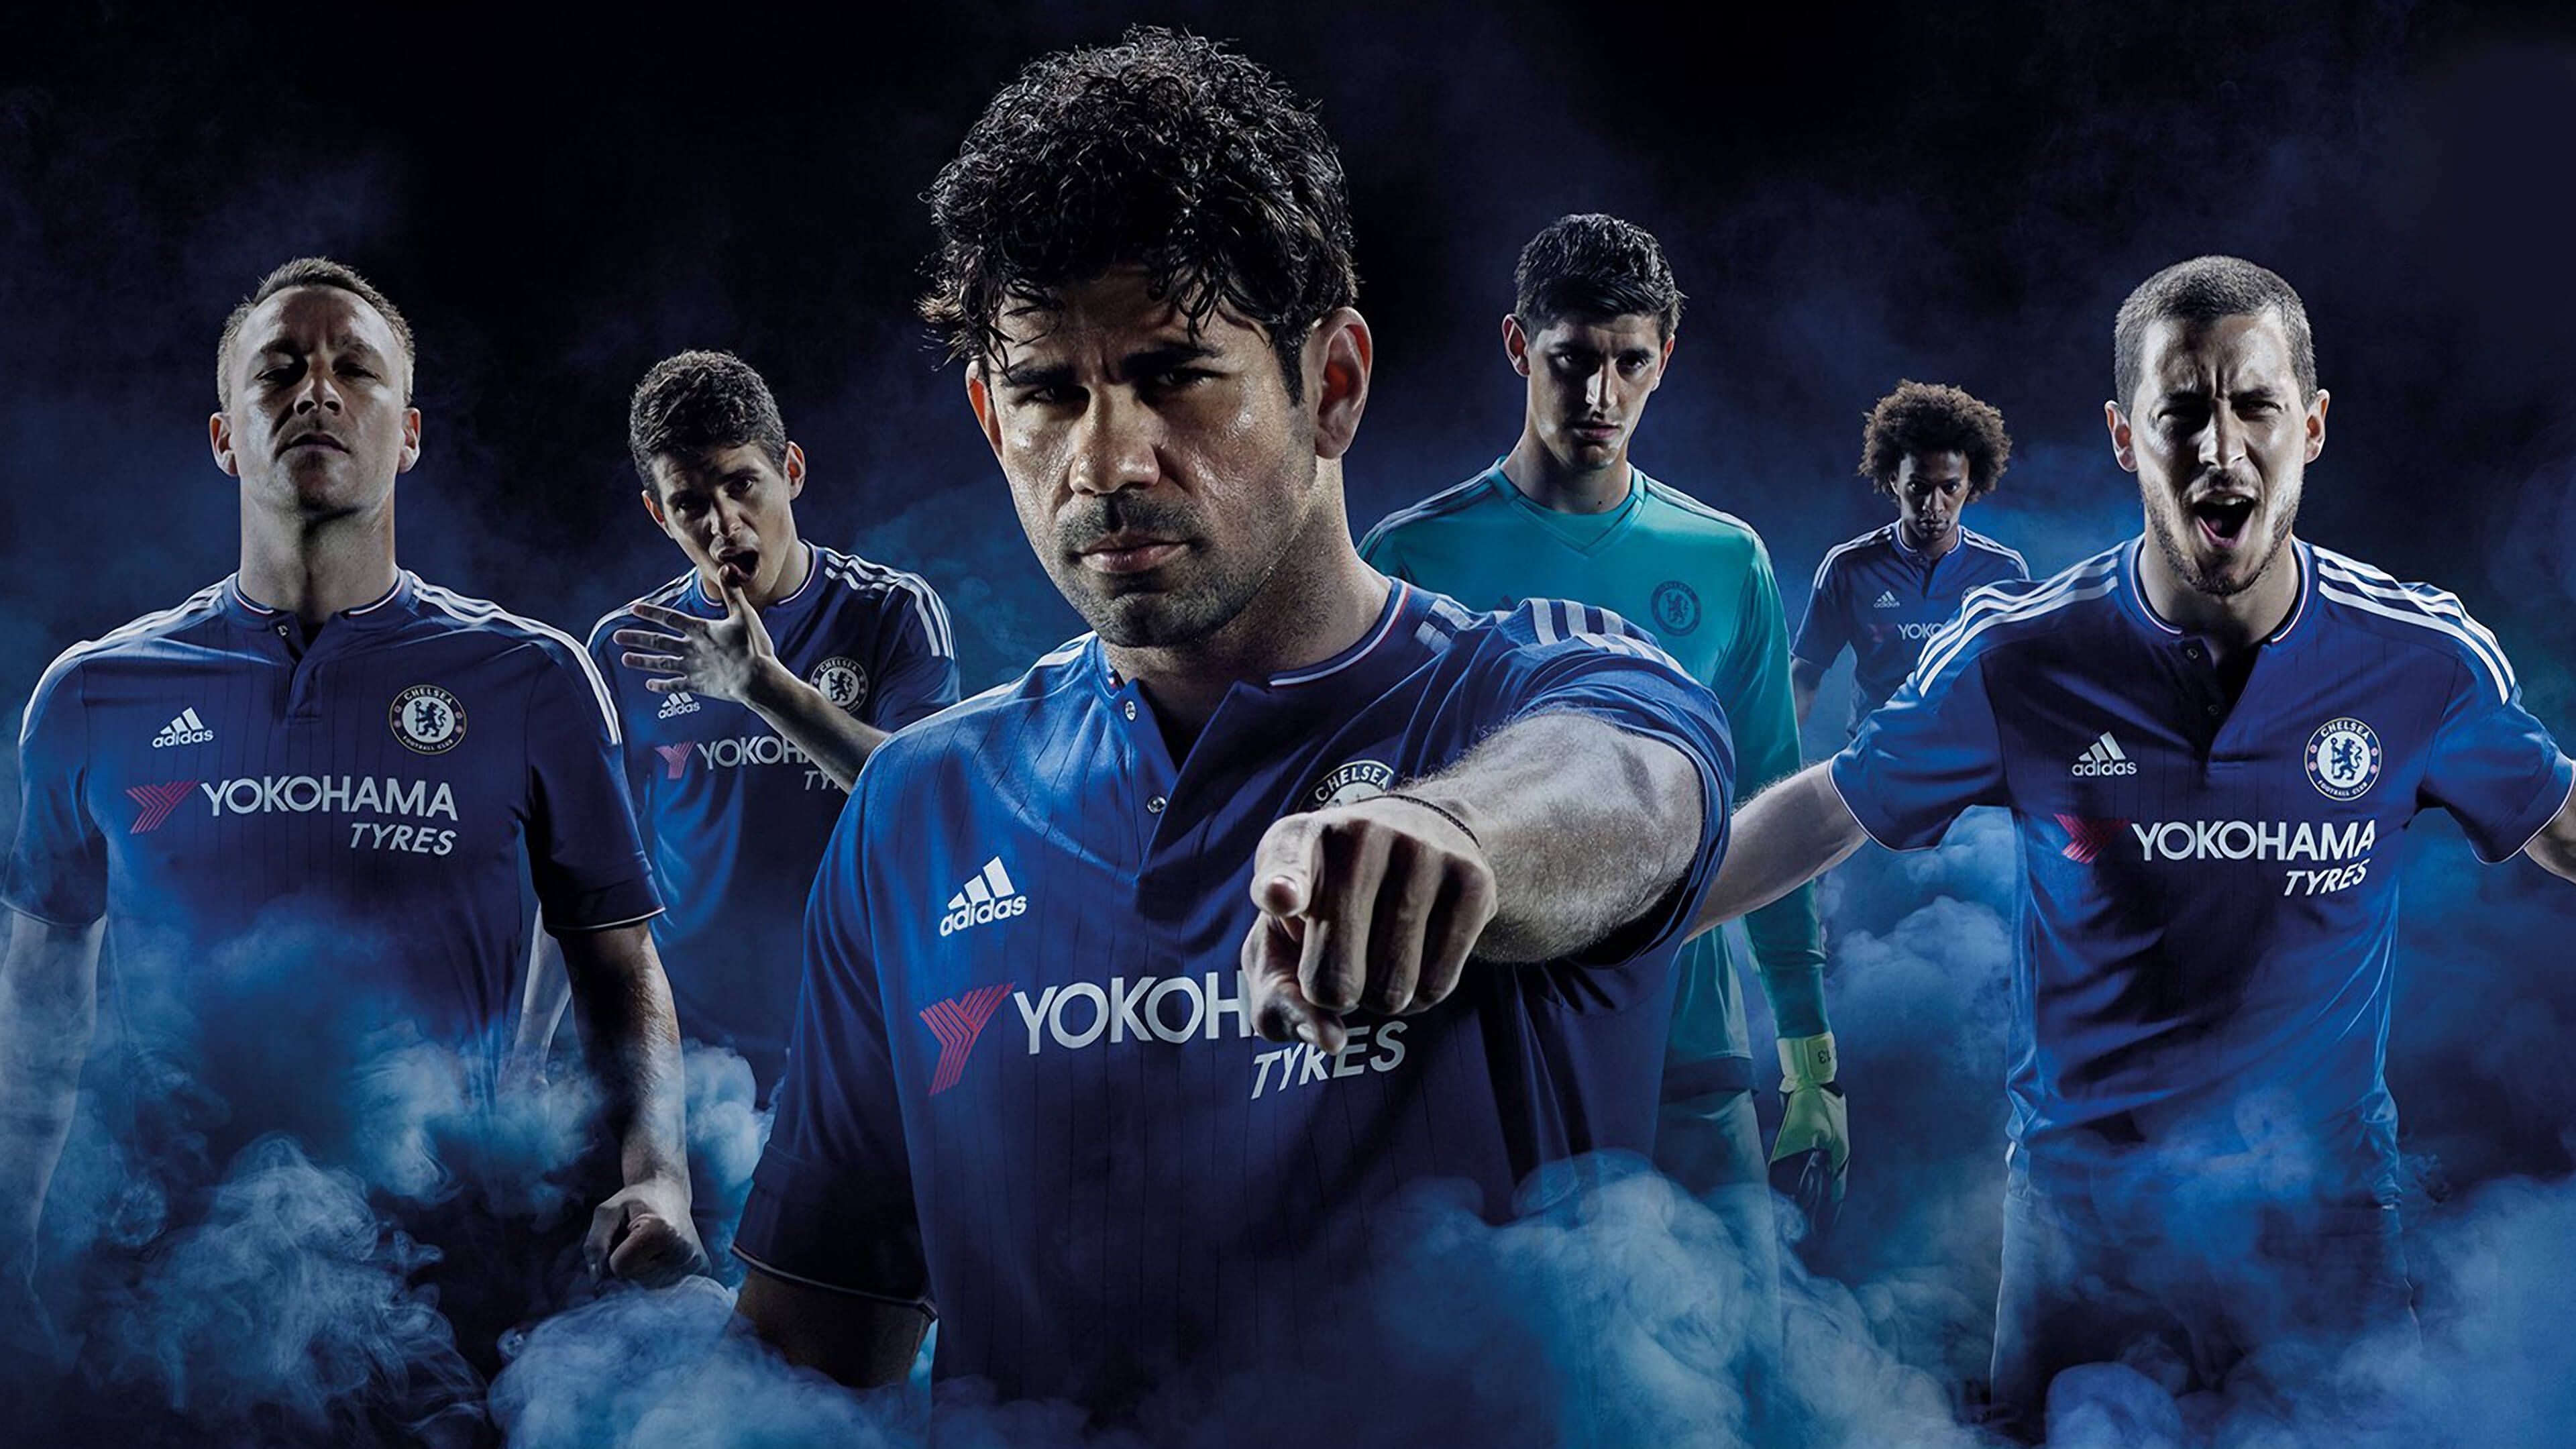 Chelsea-FC-2015-2016-Adidas-Home-kit-4K-Wallpaper.jpg